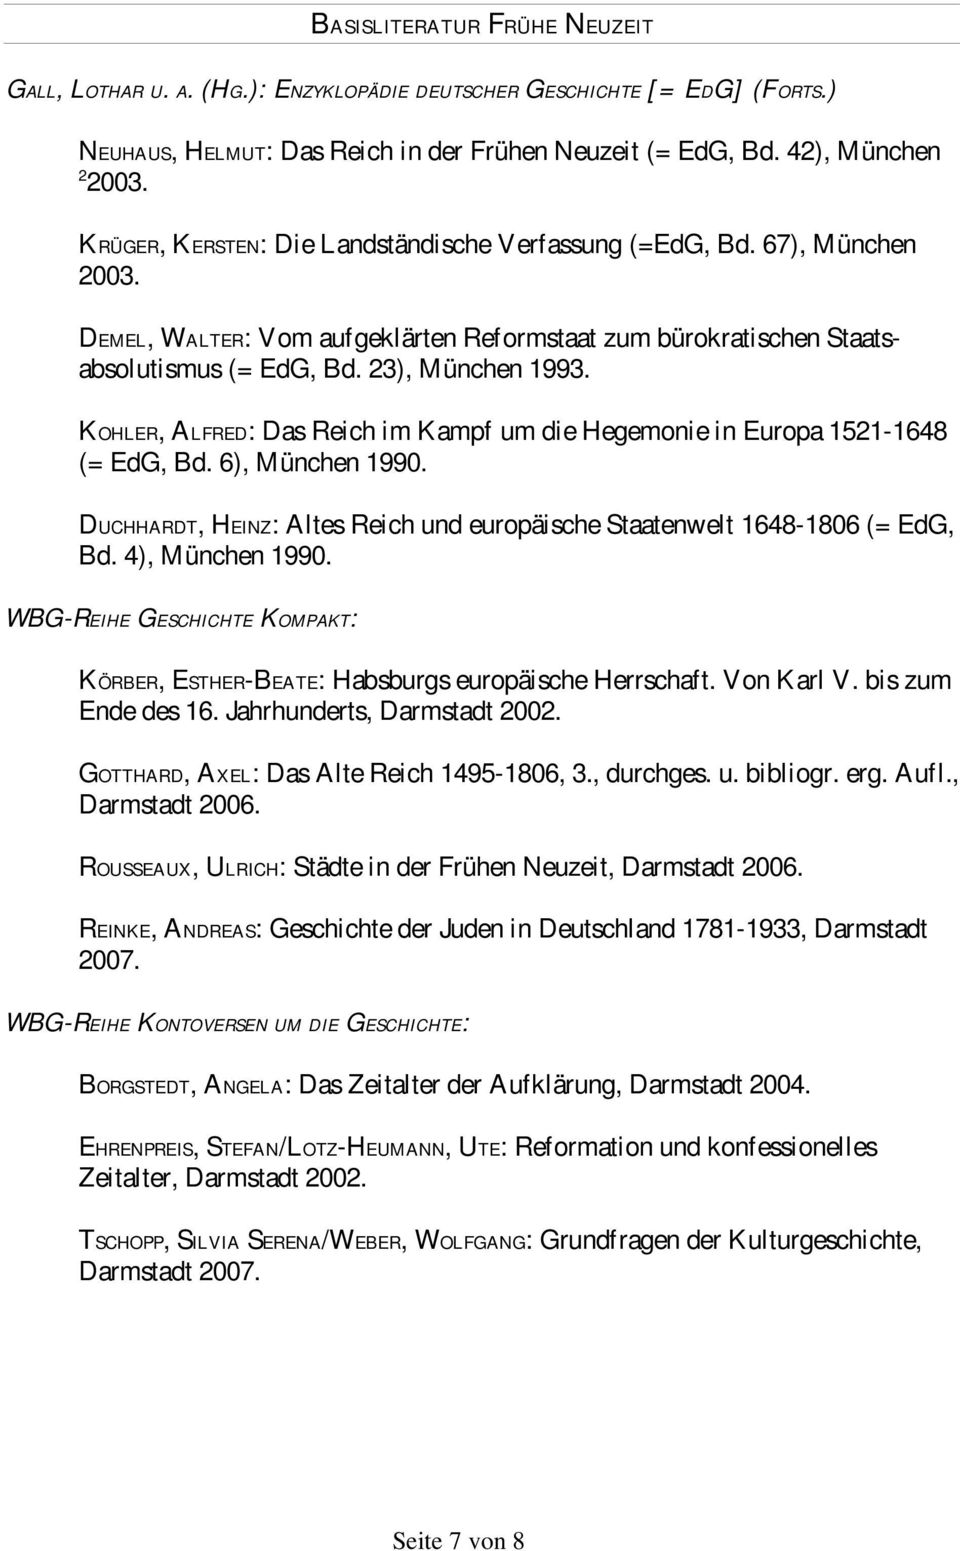 KOHLER, ALFRED: Das Reich im Kampf um die Hegemonie in Europa 1521-1648 (= EdG, Bd. 6), München 1990. DUCHHARDT, HEINZ: Altes Reich und europäische Staatenwelt 1648-1806 (= EdG, Bd. 4), München 1990.